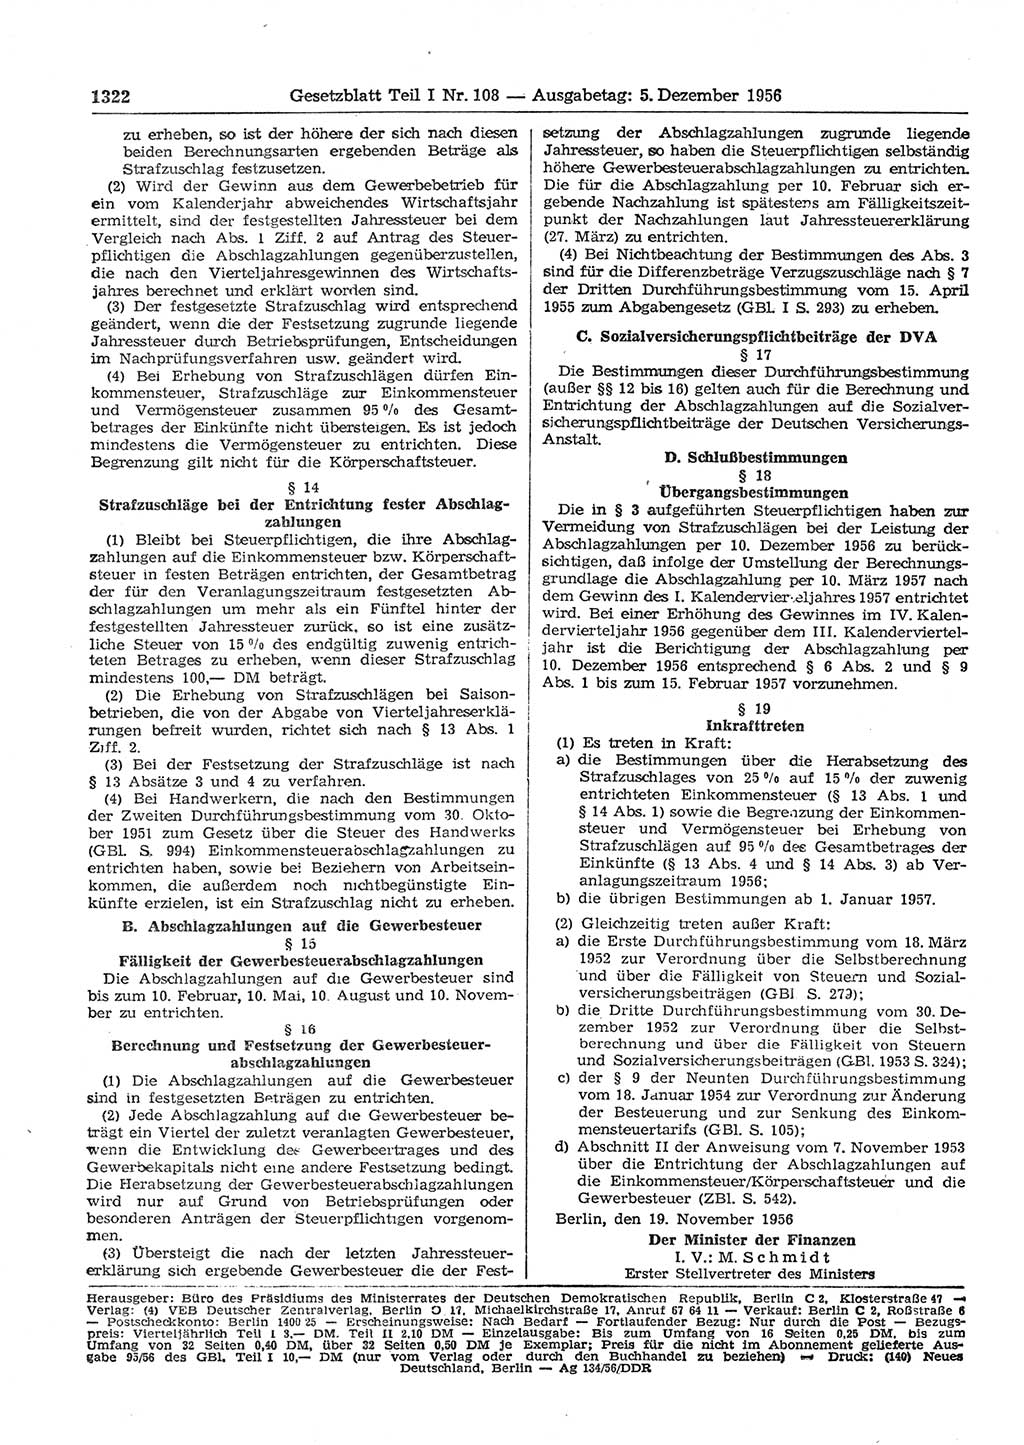 Gesetzblatt (GBl.) der Deutschen Demokratischen Republik (DDR) Teil Ⅰ 1956, Seite 1322 (GBl. DDR Ⅰ 1956, S. 1322)